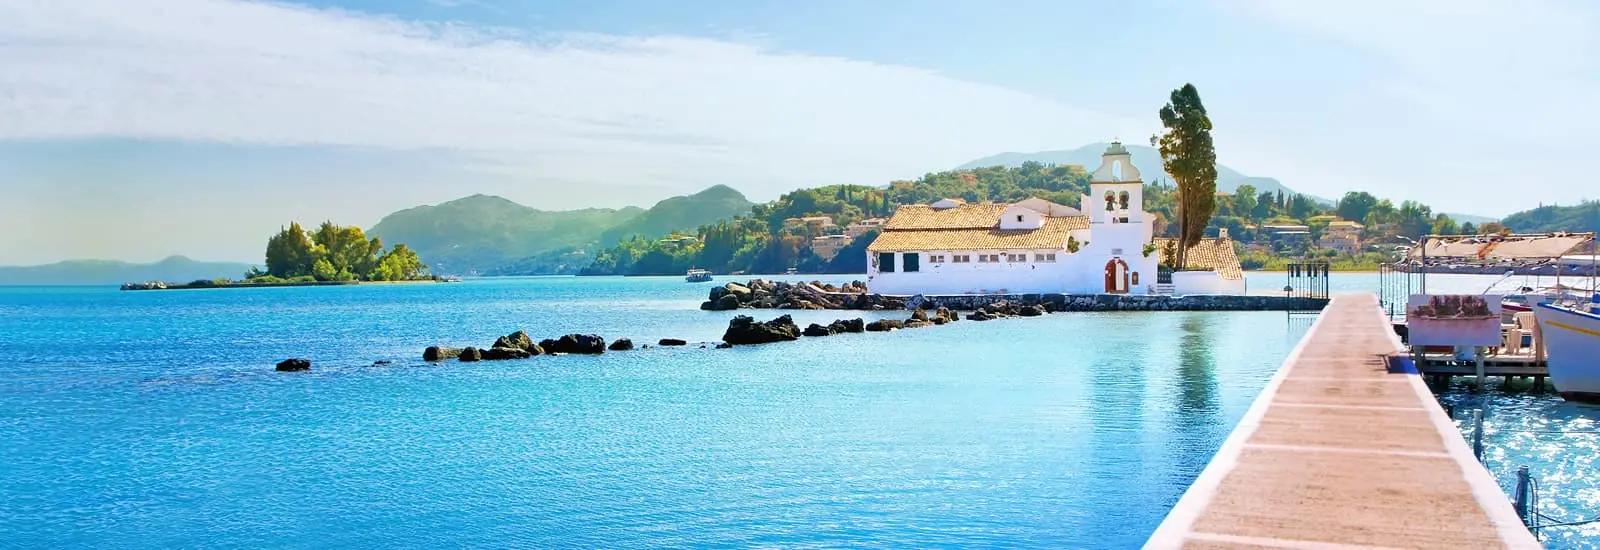 Griechenland Urlaub - Steg am Meer